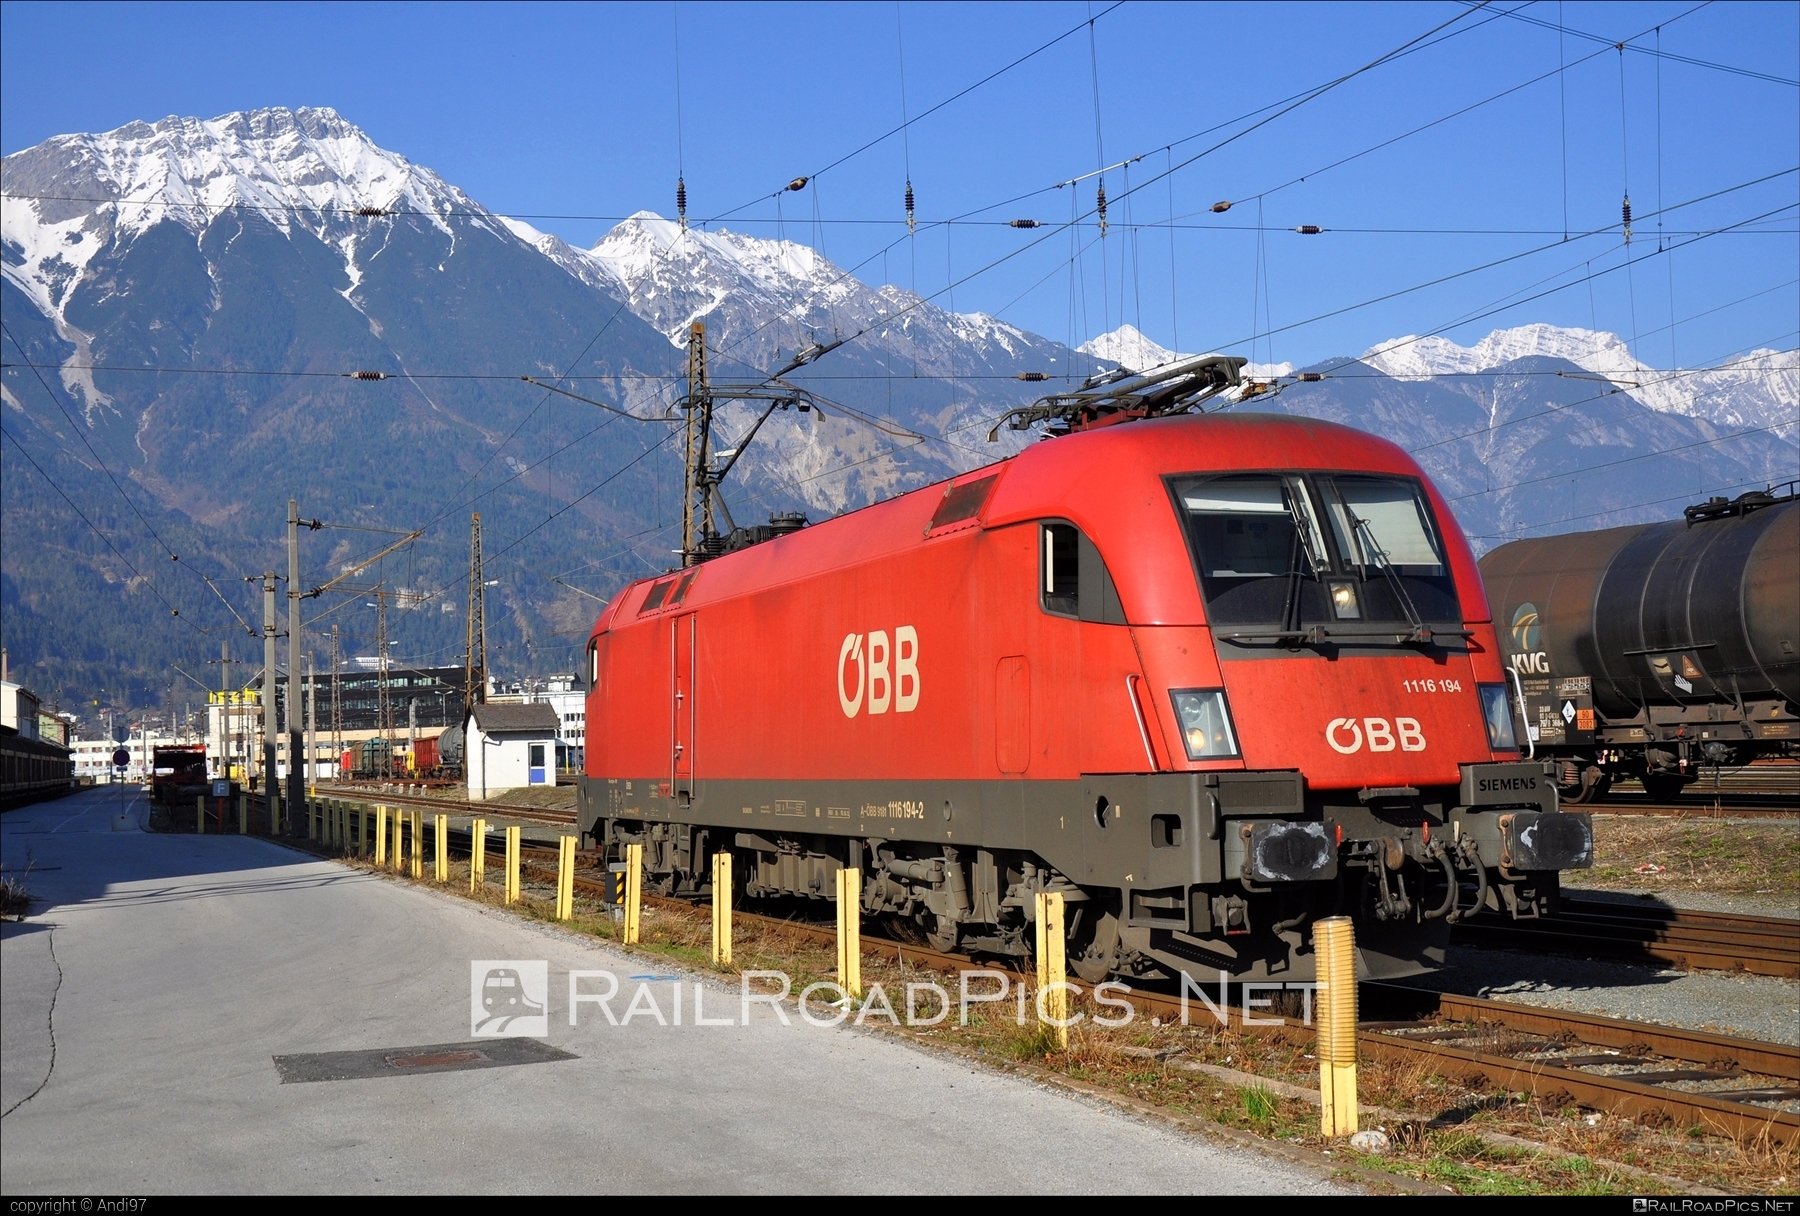 Siemens ES 64 U2 - 1116 194 operated by Rail Cargo Austria AG #es64 #es64u2 #eurosprinter #obb #osterreichischebundesbahnen #rcw #siemens #siemensEs64 #siemensEs64u2 #siemenstaurus #taurus #tauruslocomotive